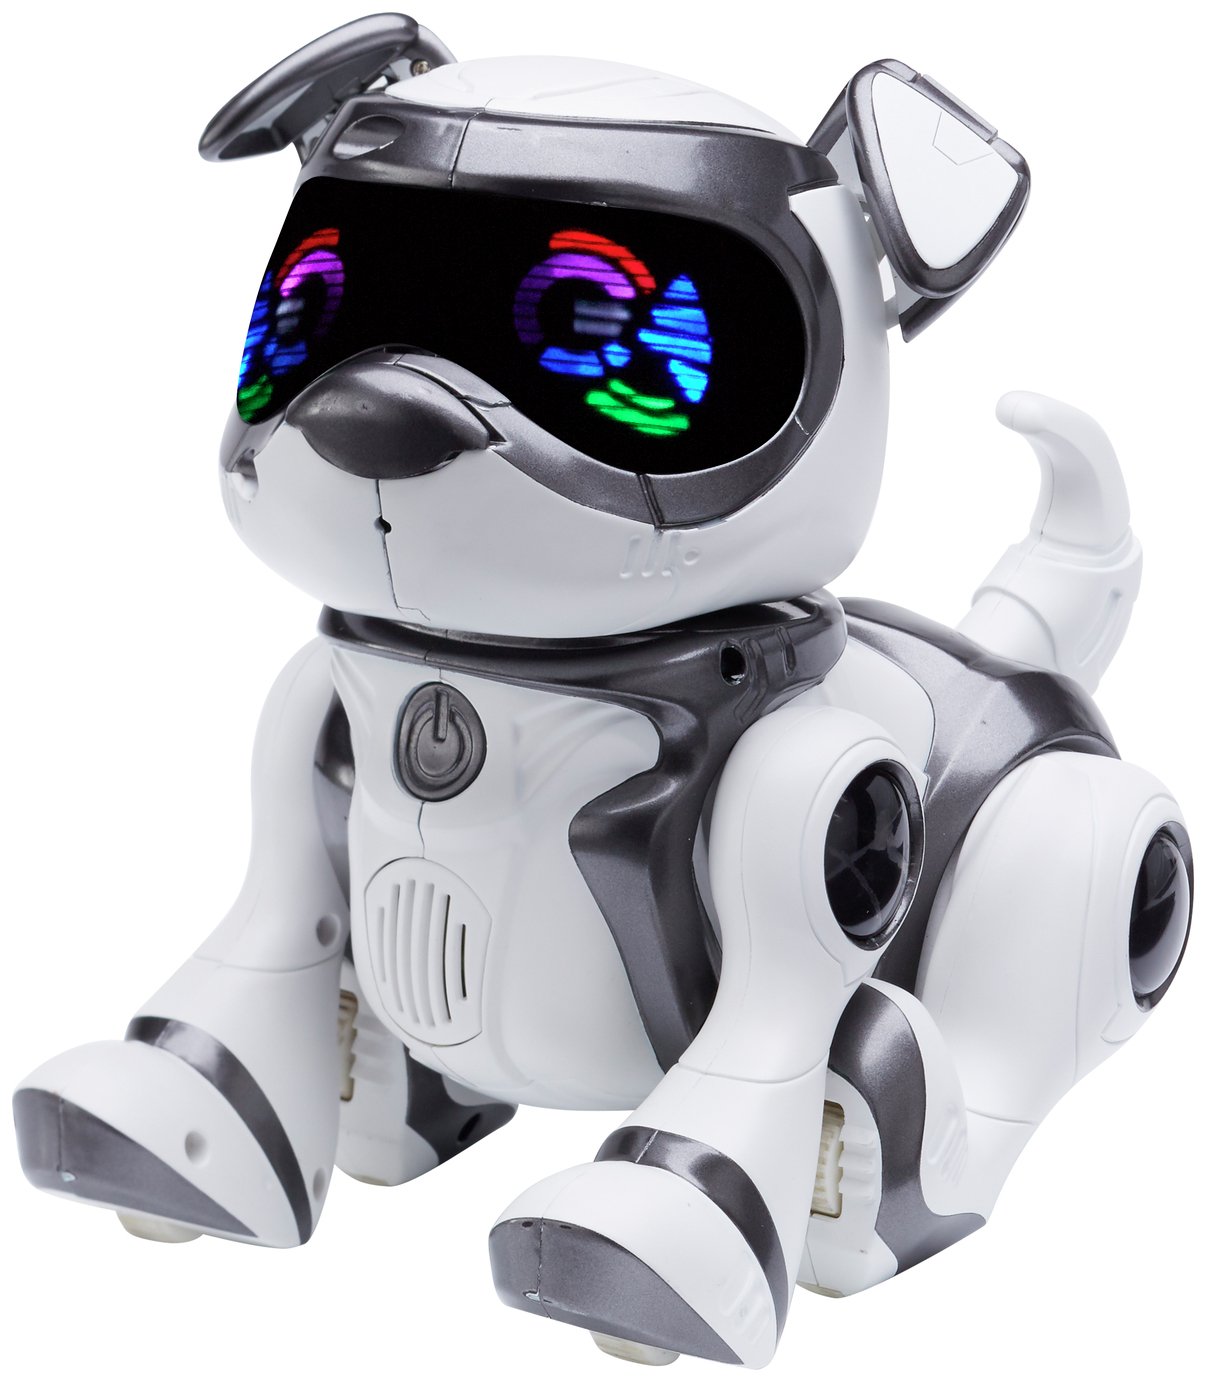 robot toys for kids